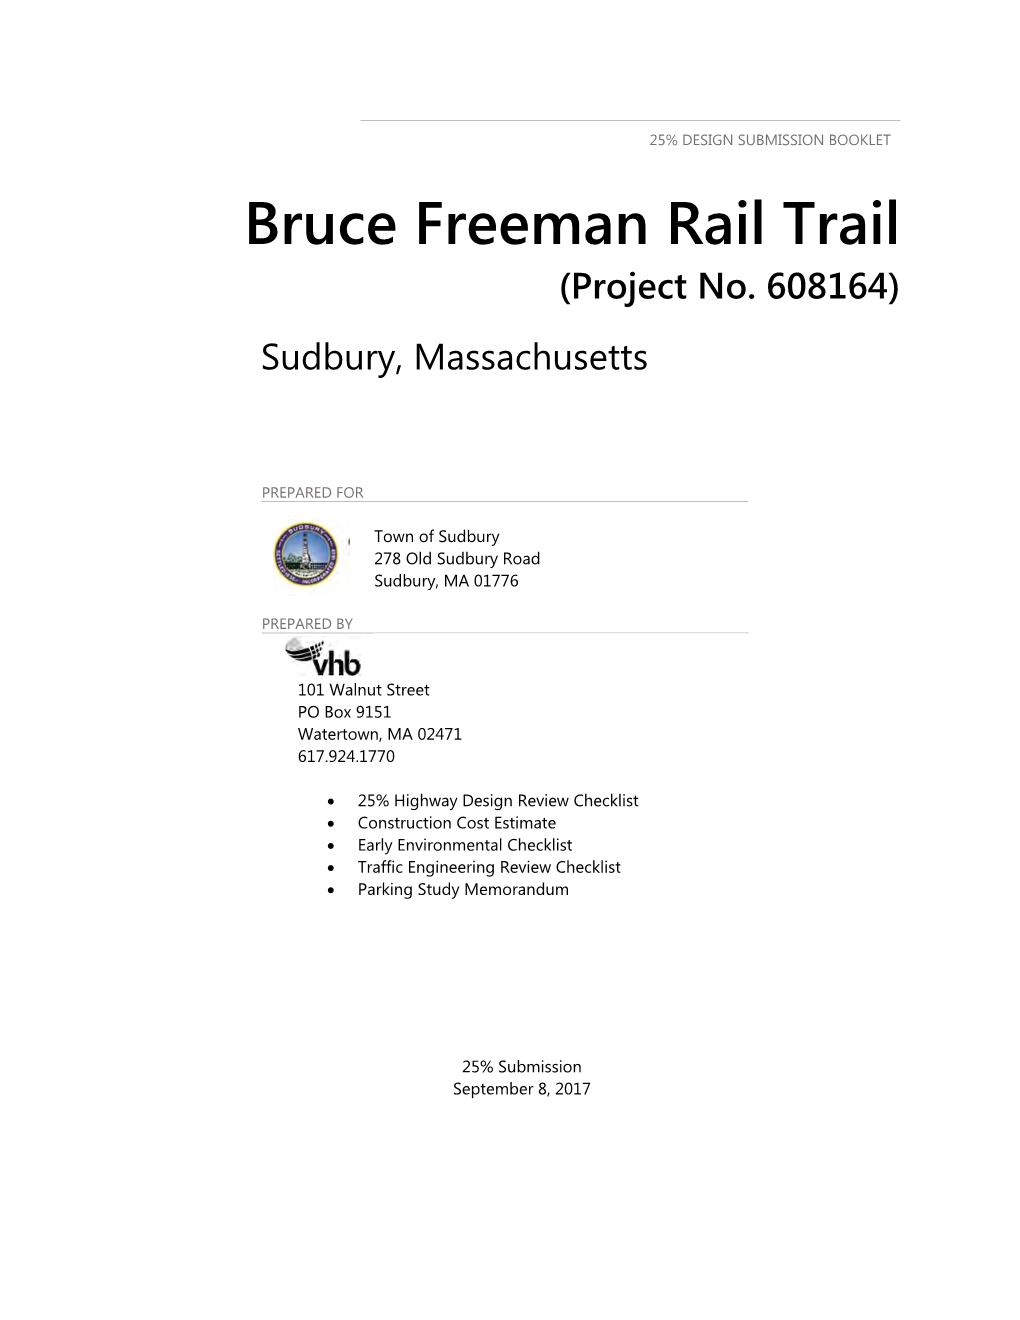 Bruce Freeman Rail Trail (Project No